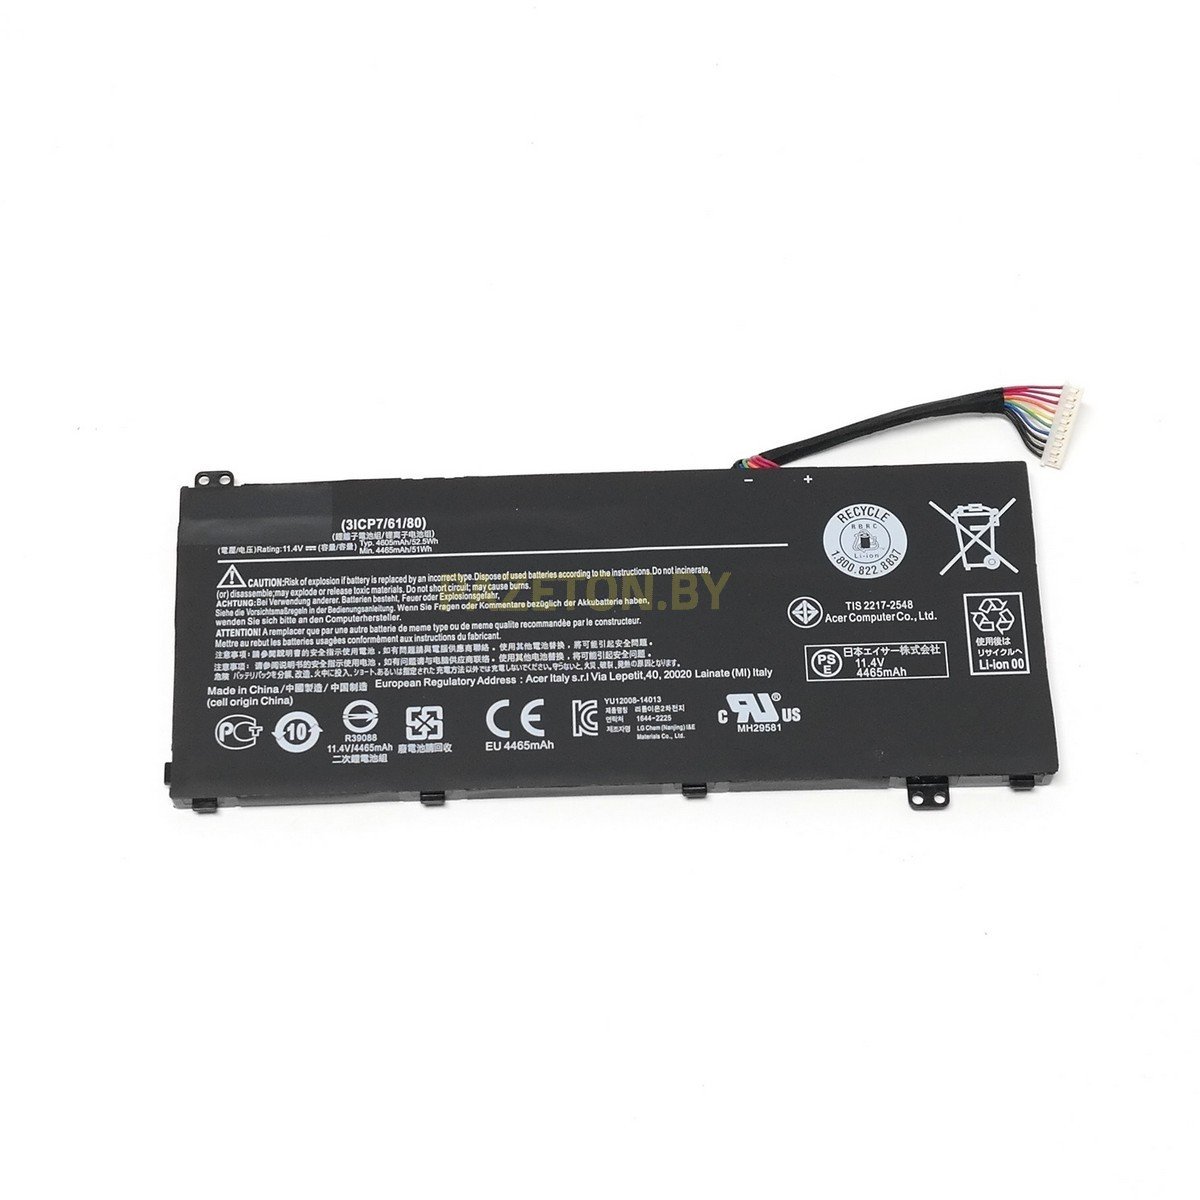 Батарея AC14A8L 11.4V 52.5Wh для Acer Acer V15 Nitro Aspire VN7-571 VN7-591 VN7-571G VN7-791G VN7-791